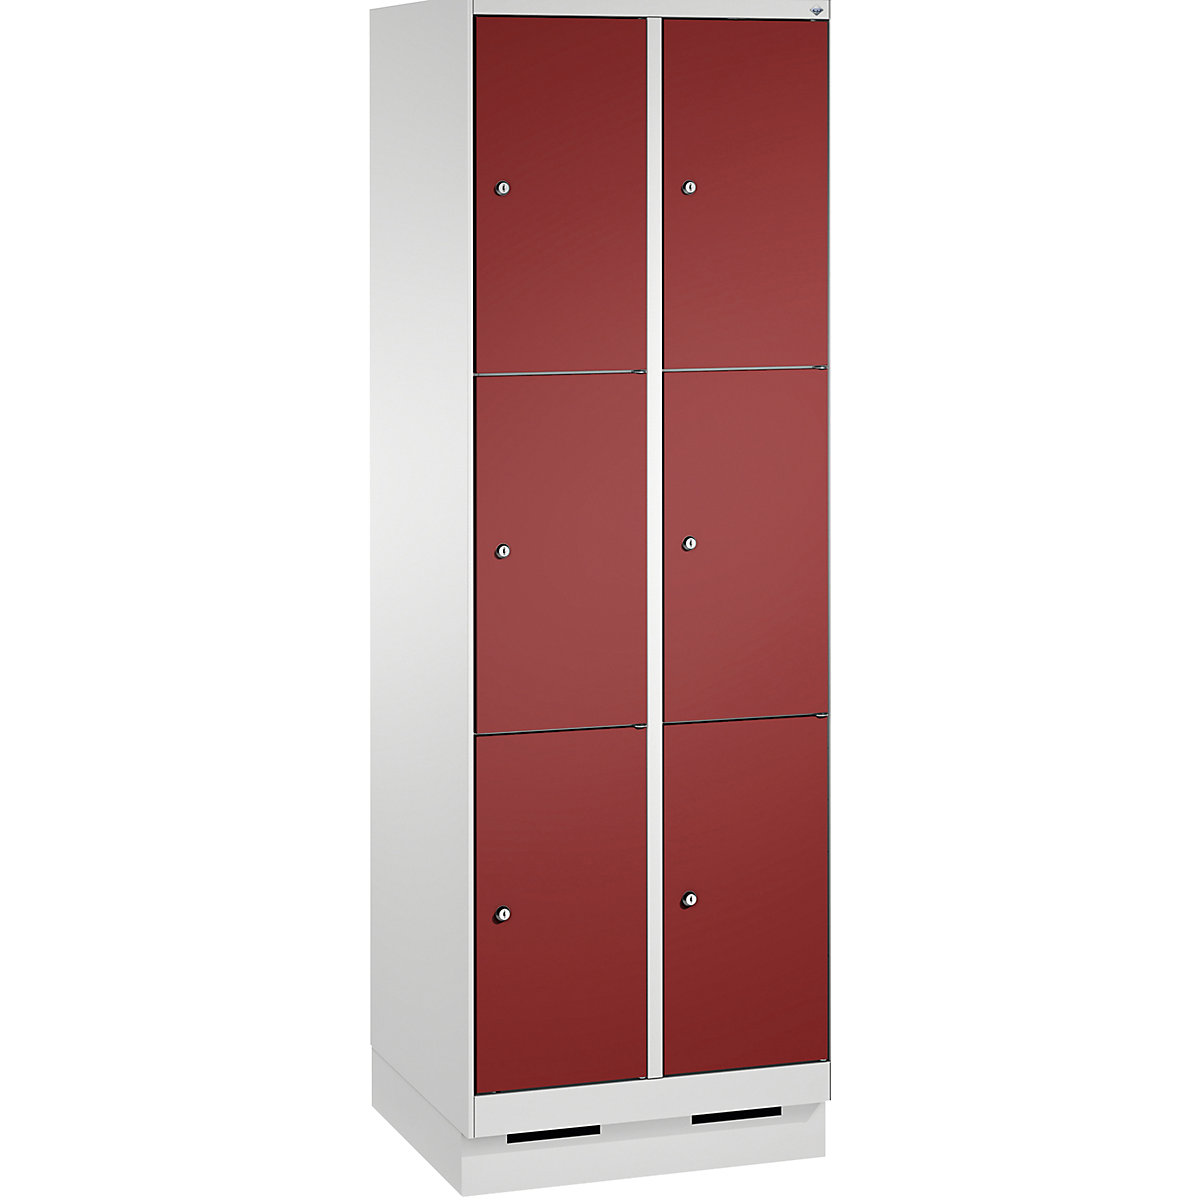 Armoire à casiers sur socle EVOLO – C+P, 2 compartiments, 3 casiers chacun, largeur compartiments 300 mm, gris clair / rouge rubis-3